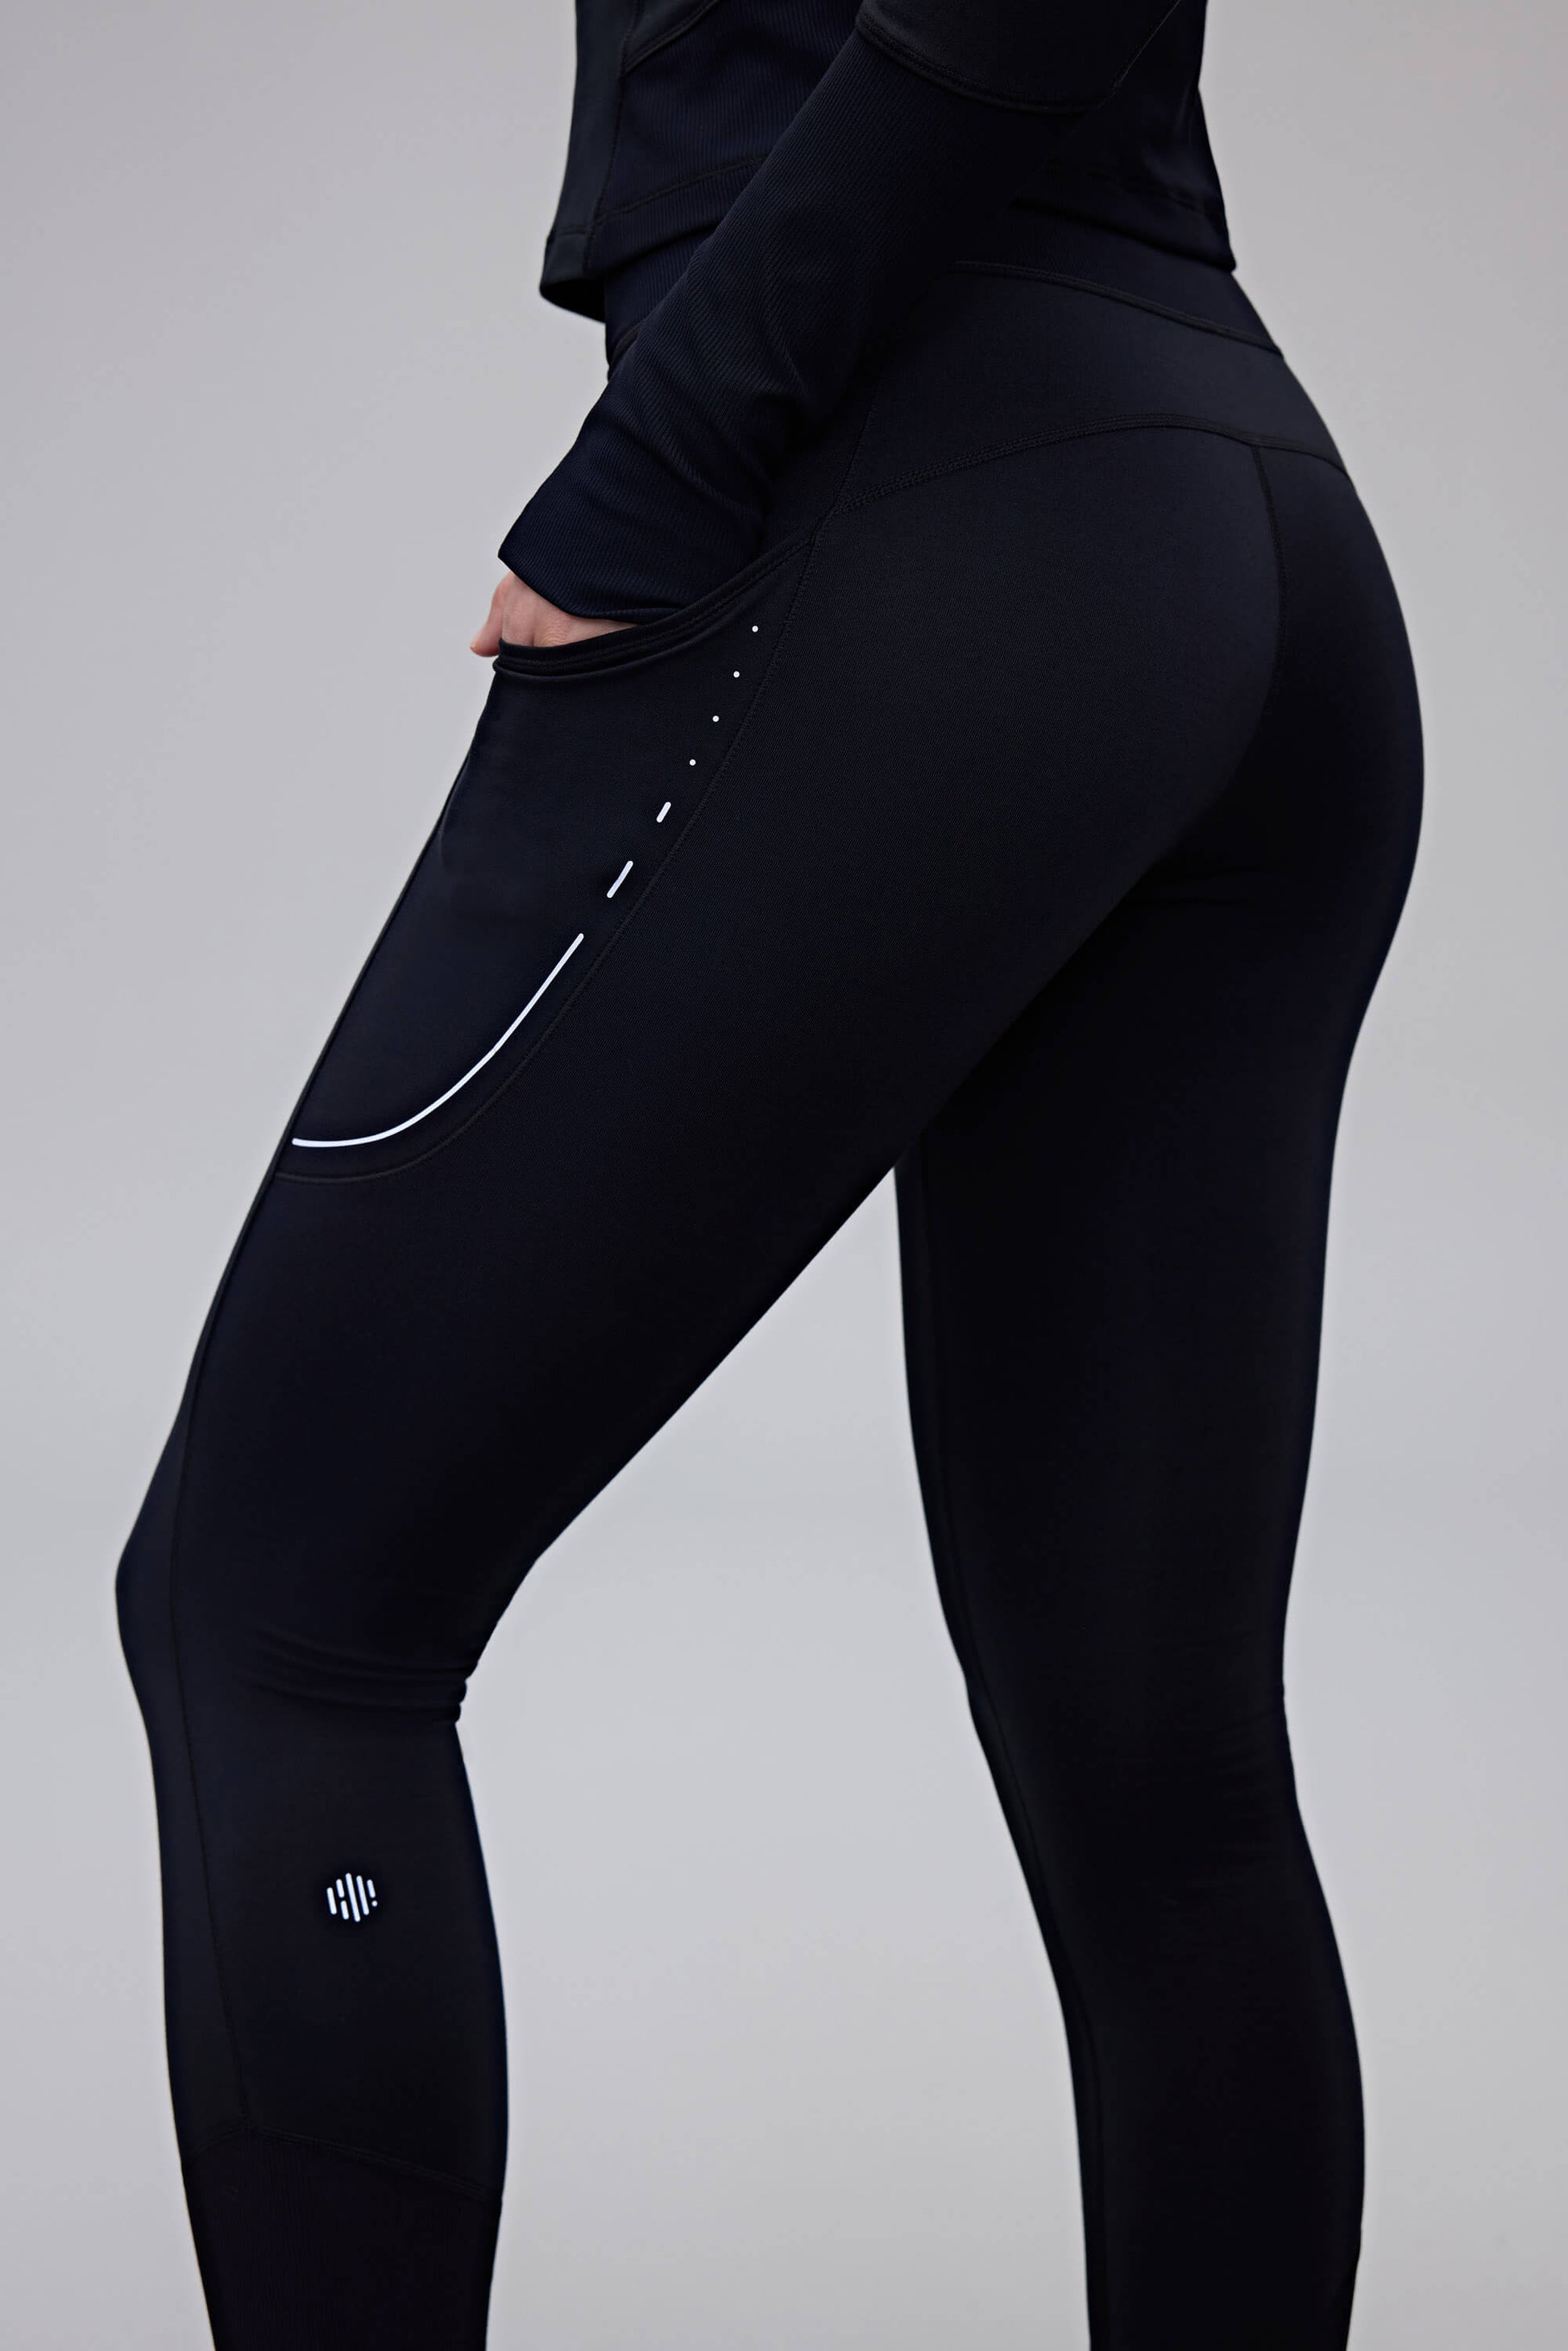 close up of woman in black leggings